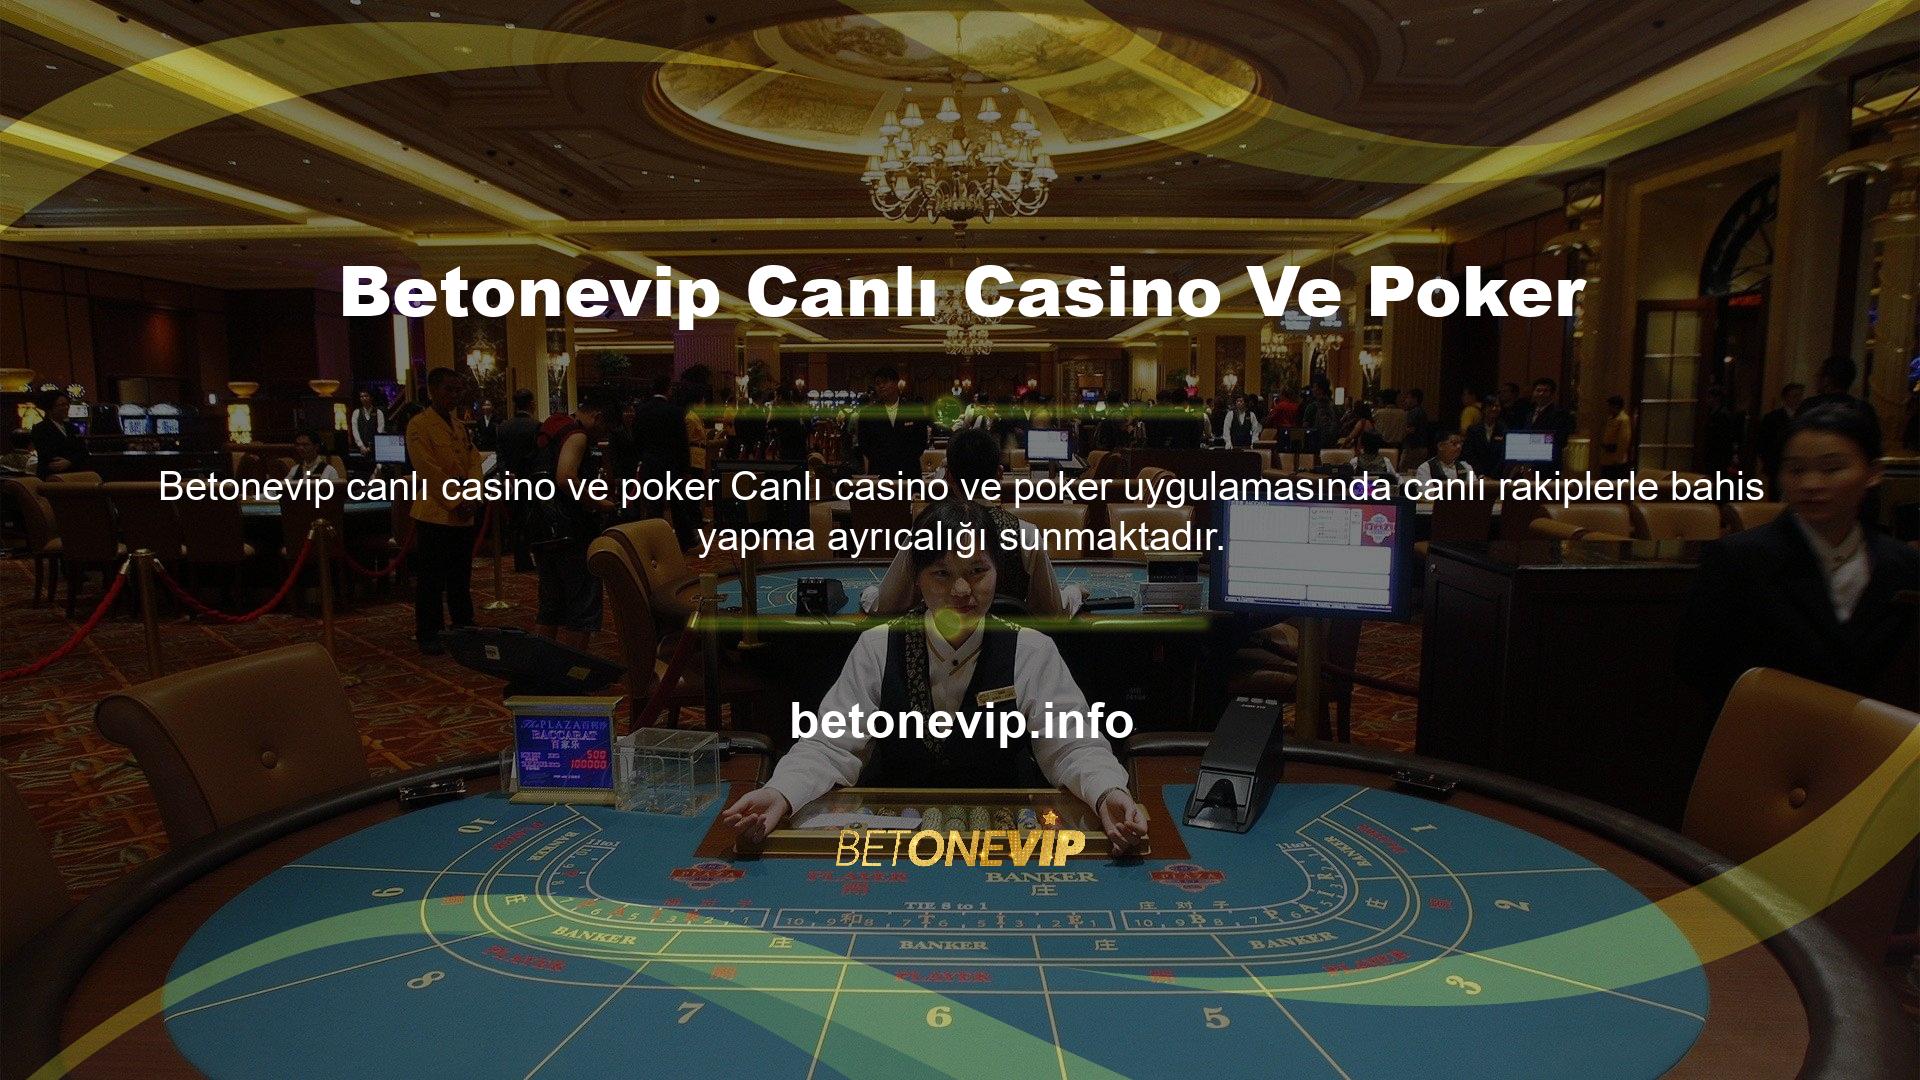 Anlık işlem sayesinde gerçek casino heyecanı içinde bahis oynayabilirsiniz